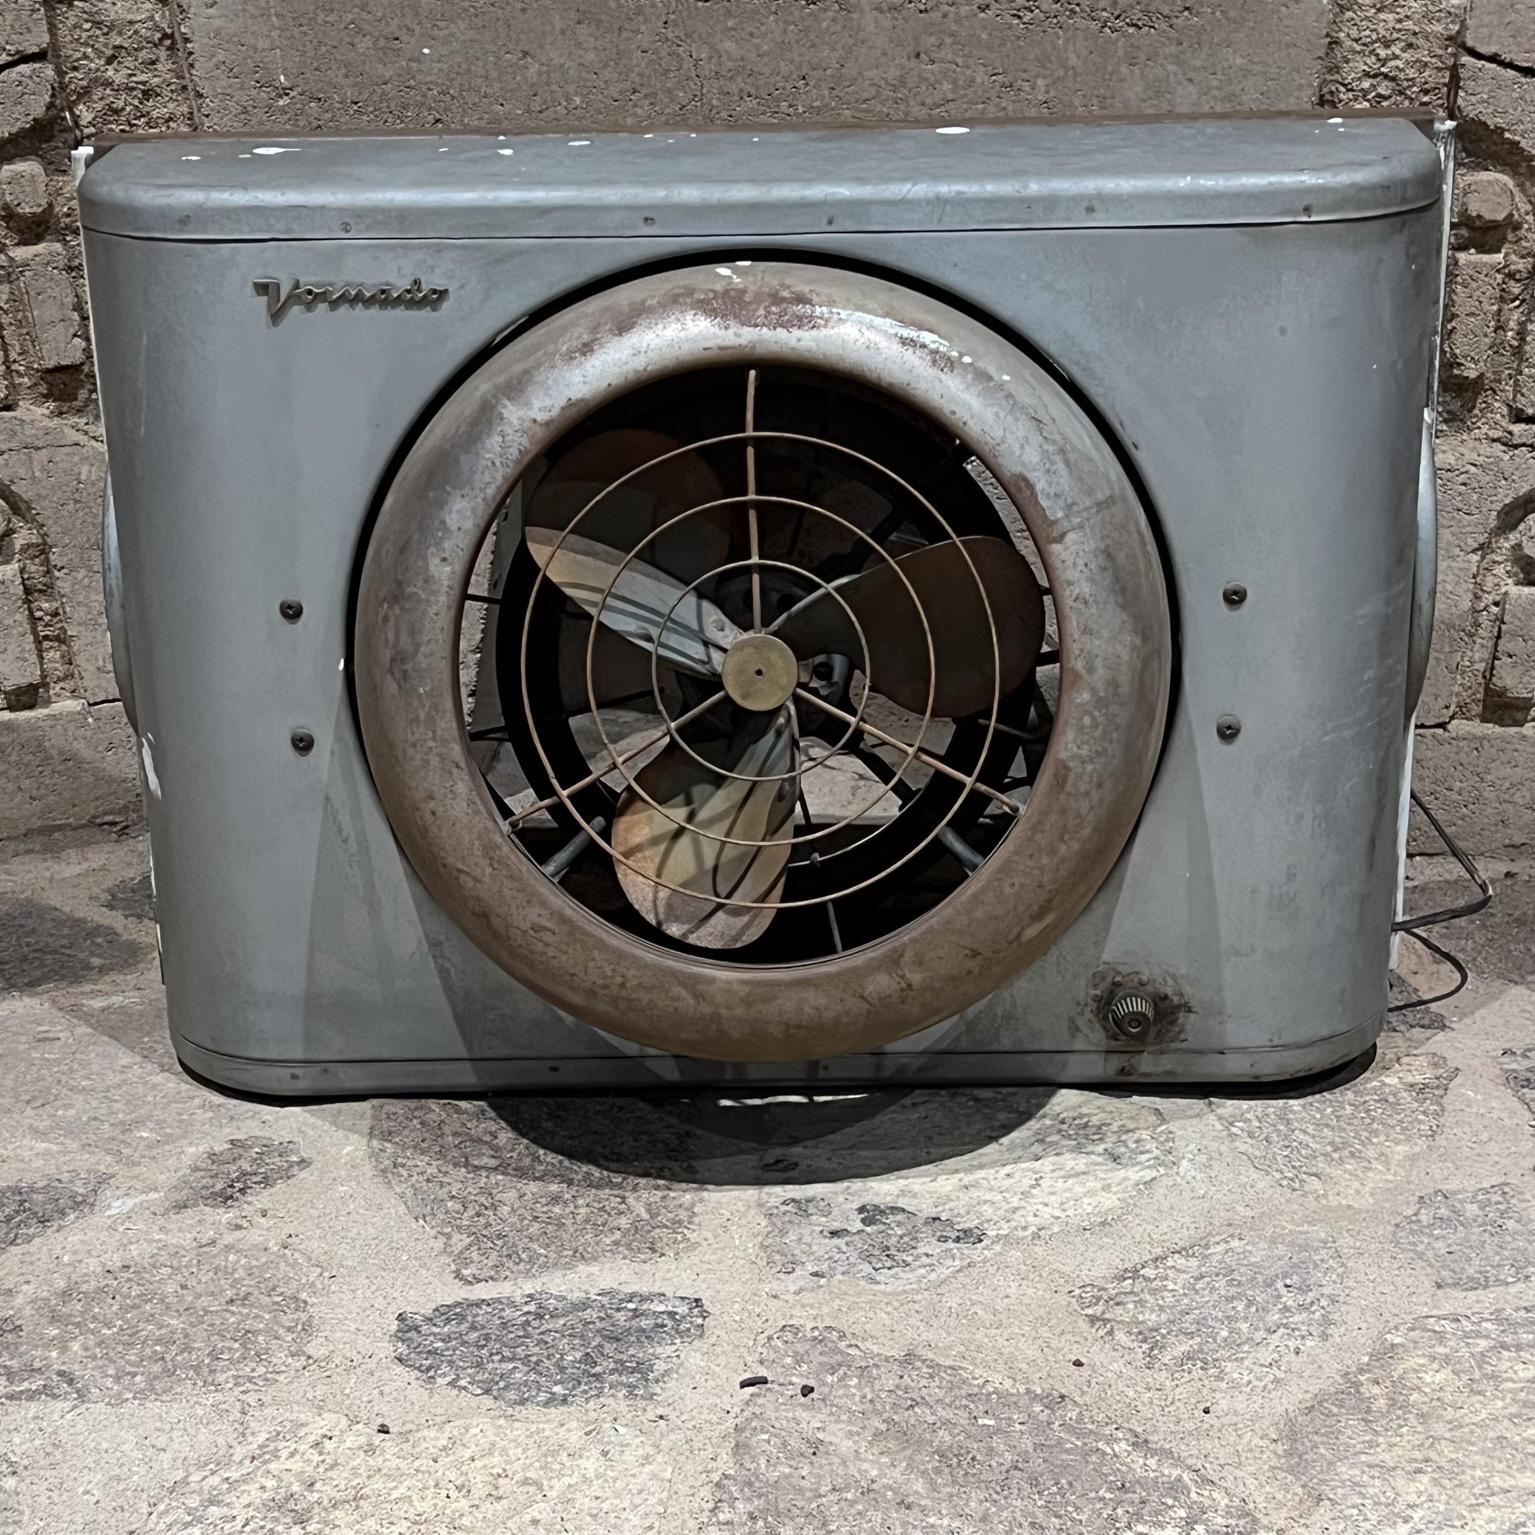 1950s Vintage Wall Unit Vornado Industrial Gray Electric Window Fan
18 H 37 B (offen) 25,5 B geschlossen x 9,5 T
Gebrauchter, unrestaurierter Vintage-Zustand.
Fehlender Kreis mit Label in der Mitte
Weiße Farbe tropft. Verstaubt. Altbestand.
Getestet